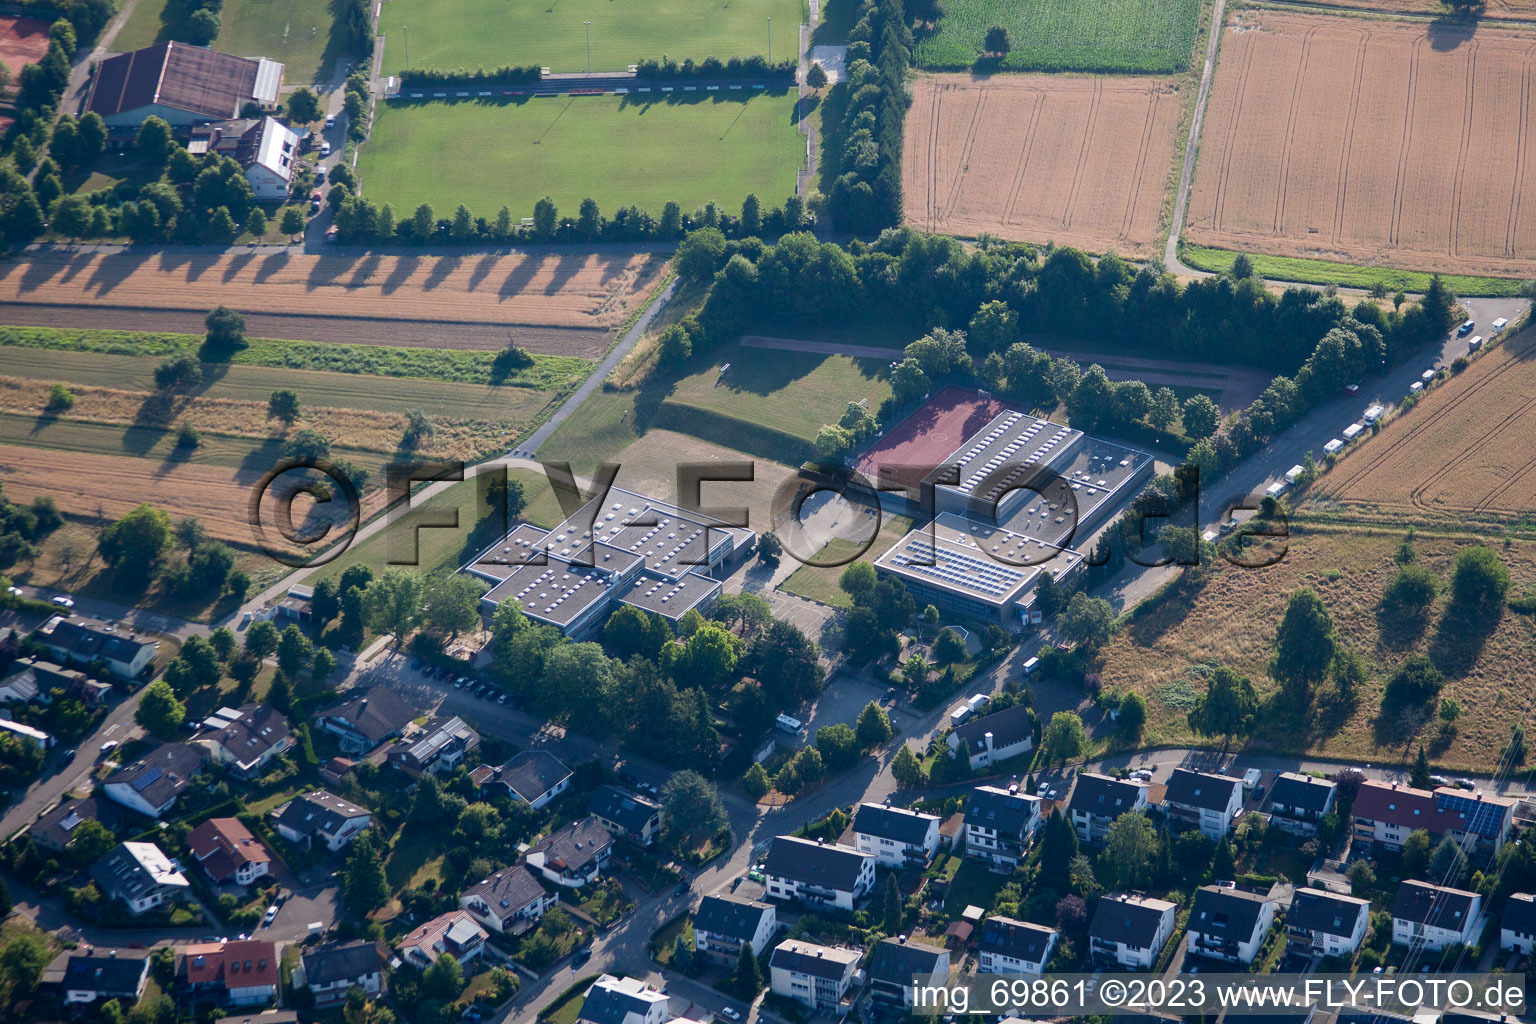 Vue aérienne de École primaire Heinz Barth à le quartier Grünwettersbach in Karlsruhe dans le département Bade-Wurtemberg, Allemagne